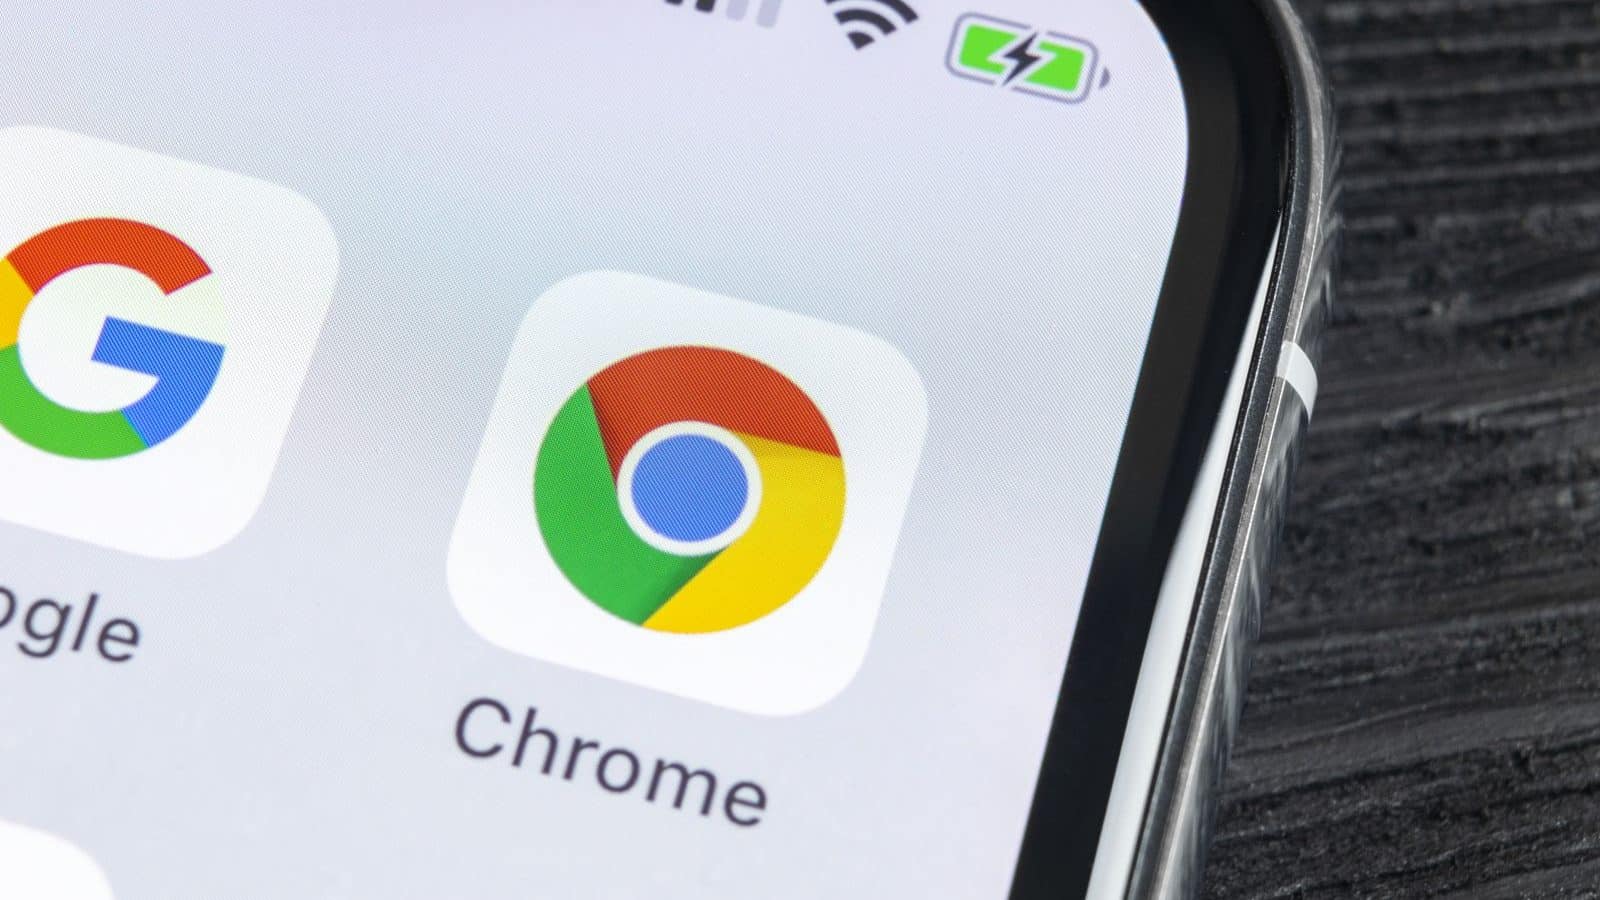  Google Chrome: arakatzaile ahaltsuena eta polifazetikoa - Ezagutu bere 4 abantaila nagusiak